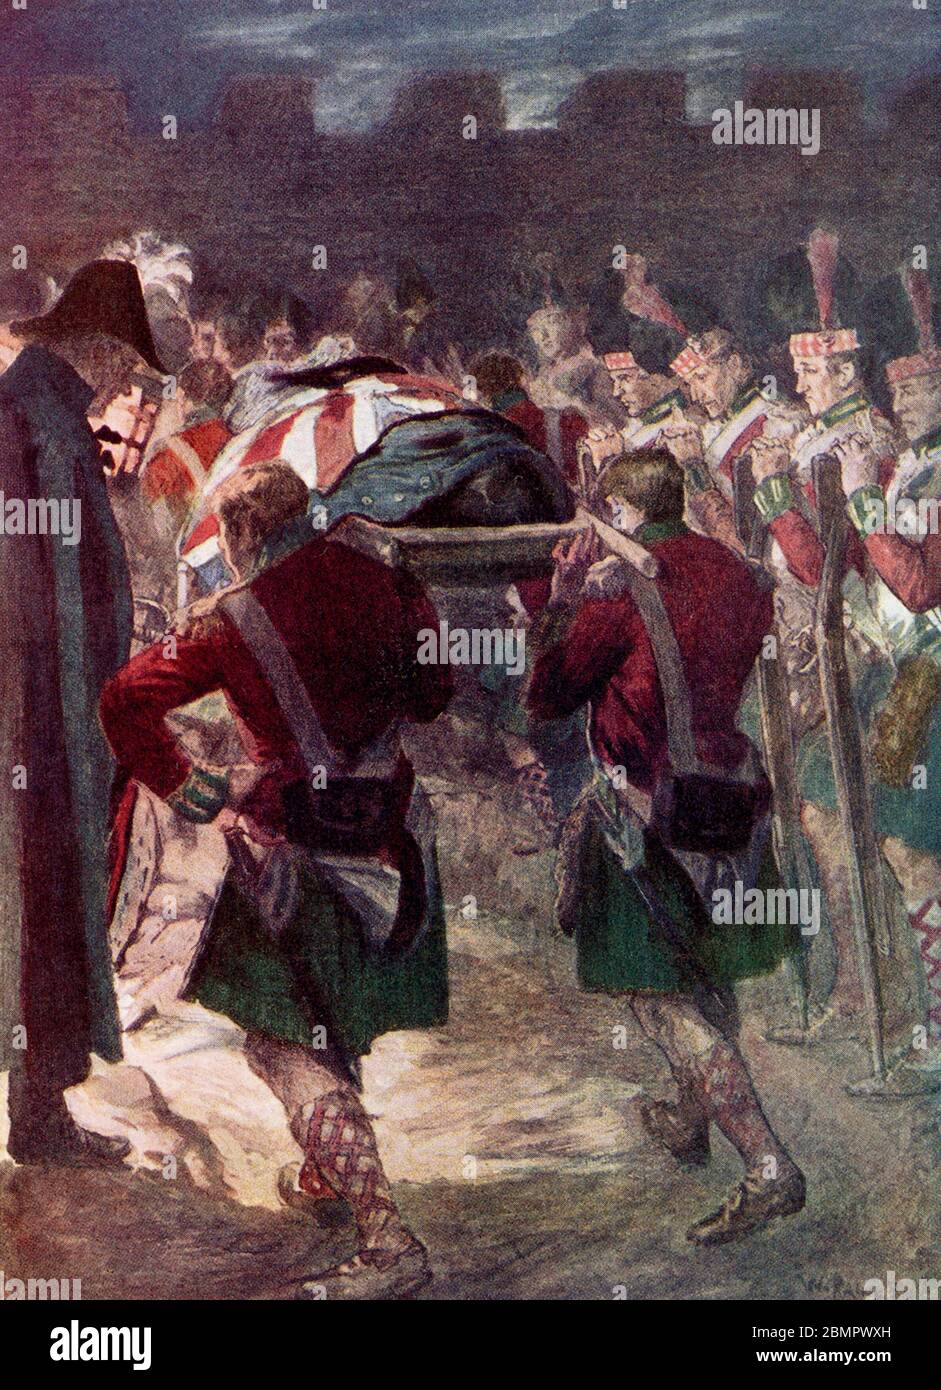 Le Lieutenant-général Sir John Moore (1761-1809) était un général de l'Armée britannique, également connu sous le nom de Moore de Corunna. Il est surtout connu pour ses réformes de formation militaire et pour sa mort à la bataille de Corunna, dans laquelle il a repoussé une armée française sous le maréchal Soult pendant la guerre péninsulaire. Moore a été enterré enveloppé dans un manteau militaire dans les remparts de la ville. Les funérailles de Moore ont été commémorées dans le poème « le Burial de Sir John Moore après Corunna » du poète irlandais Charles Wolfe. Banque D'Images